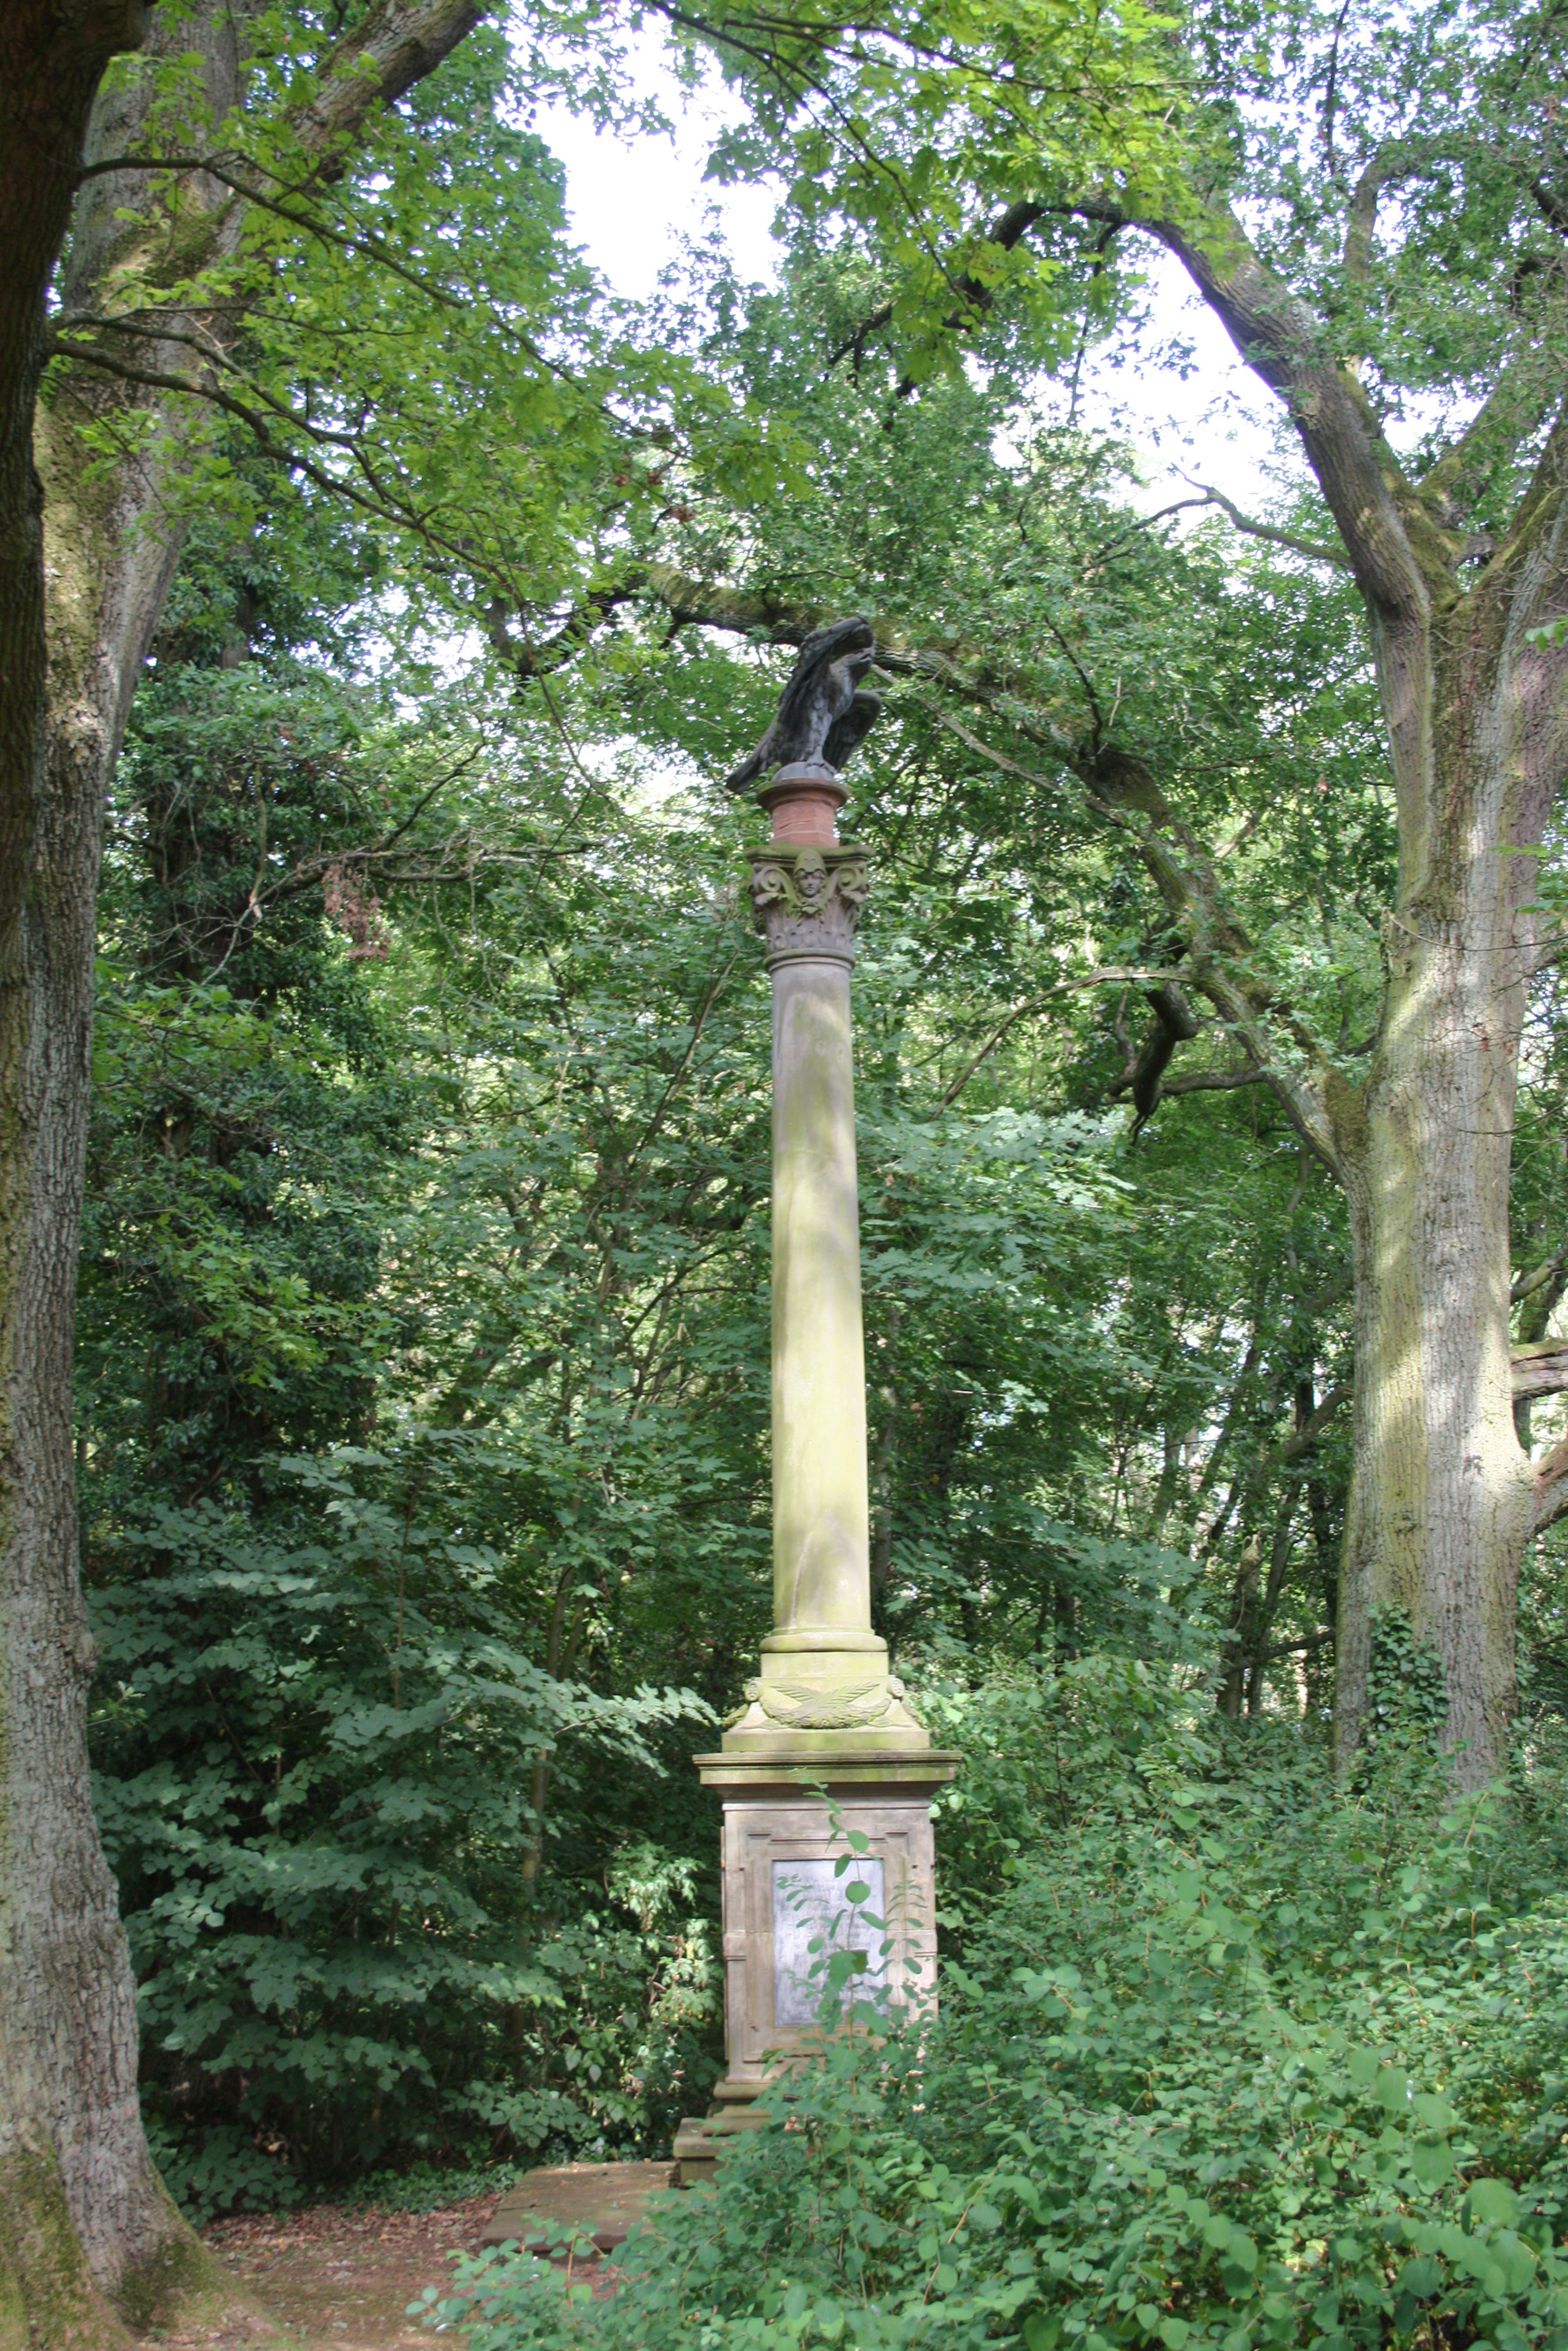 Auf dem ehemaligen Kirchhof, mittlerweile recht verwachsen hinter der Kirche, steht das Denkmal für die Gefallenen des deutsch/französischen Krieges 1870/71 (Die Schlacht von Sedan).